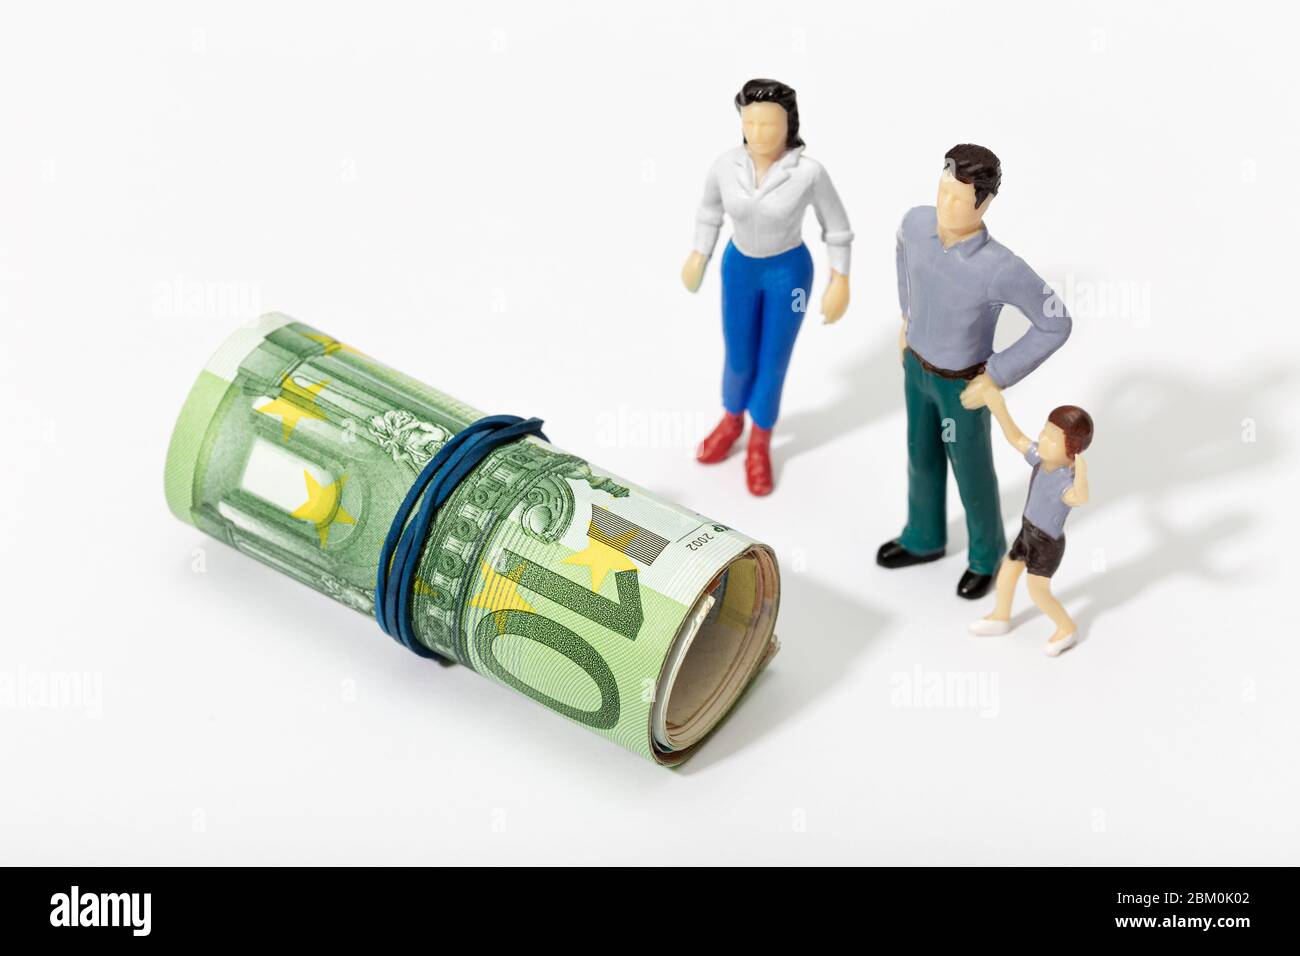 Menschliche Darstellung einer Familie, die eine Rolle Geld betrachtet. Finanz-, Investitions- oder Sparkonzept Stockfoto